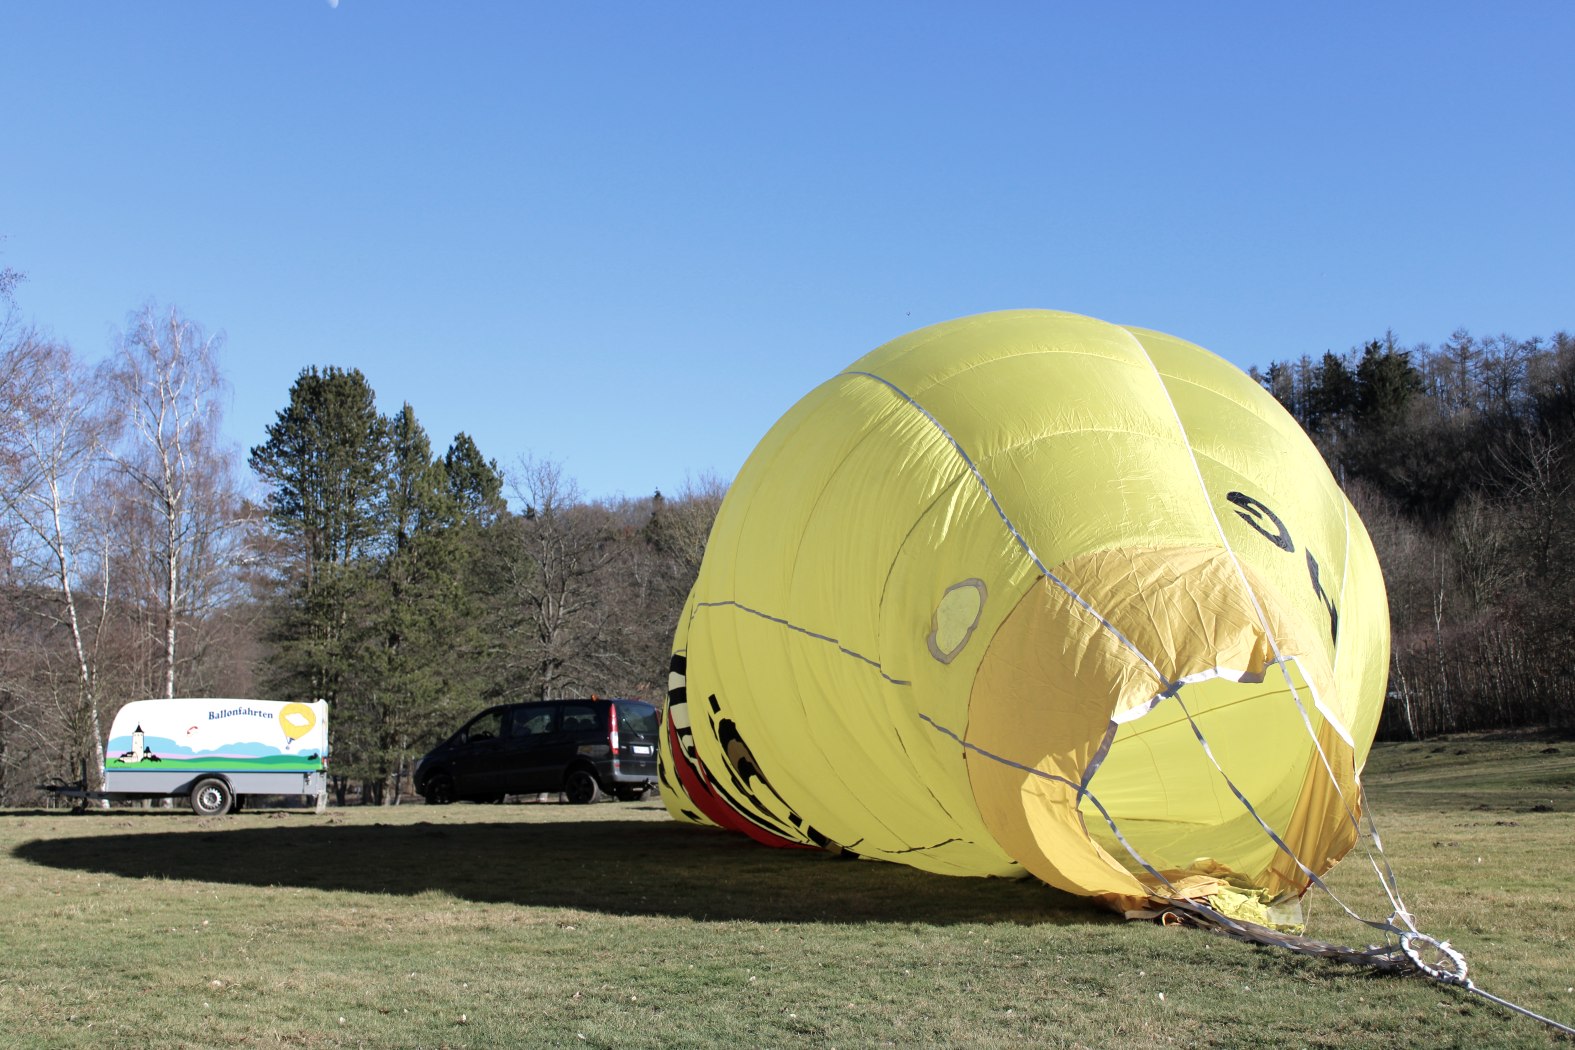 Aufrüstung des Warsteiner-Heißluftballons im Rurseezentrum Rurberg, © Rursee-Touristik / C. Freuen